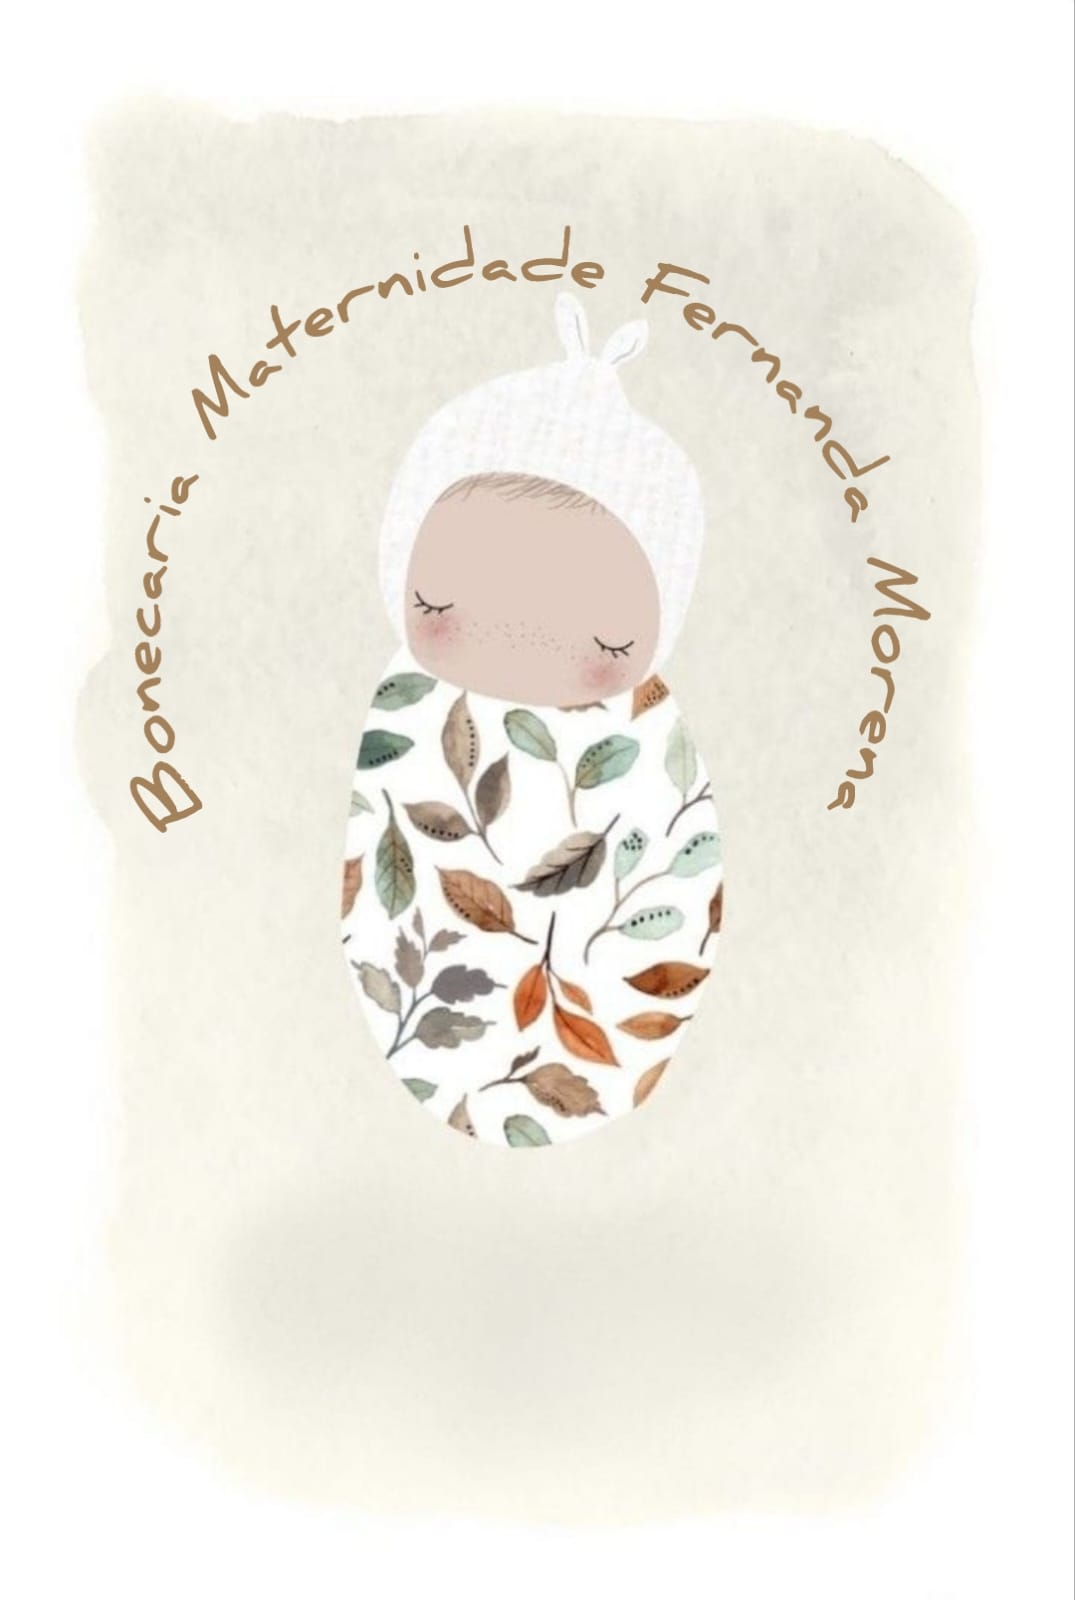 bebê reborn gêmeos jack - Maternidade Fernanda Morena